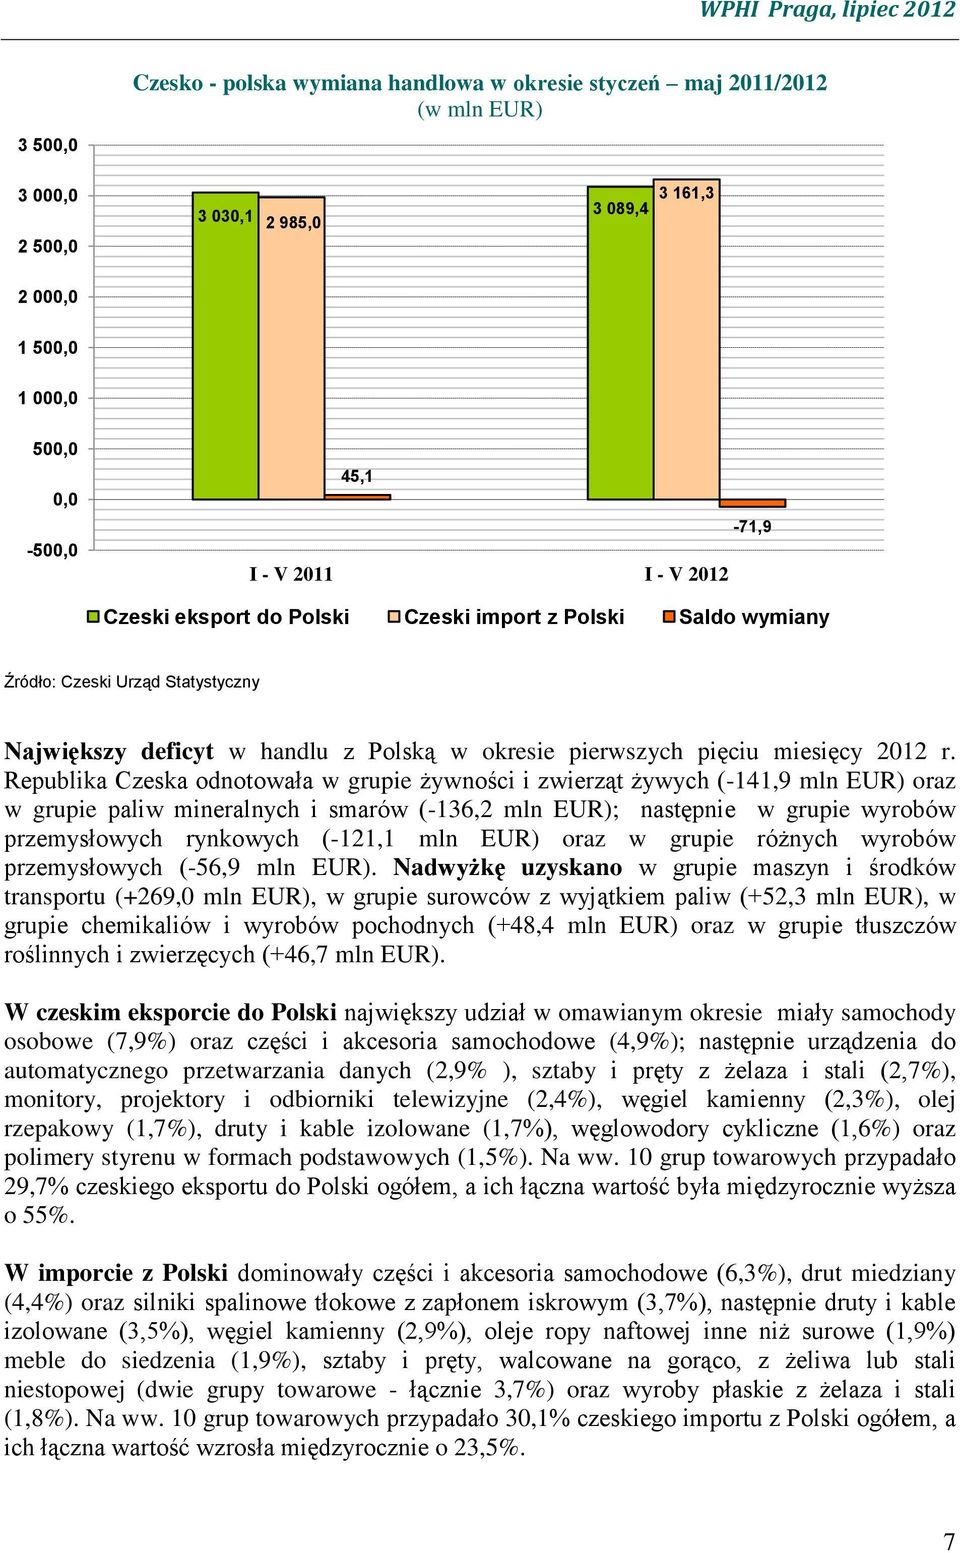 Republika Czeska odnotowała w grupie żywności i zwierząt żywych (-141,9 mln EUR) oraz w grupie paliw mineralnych i smarów (-136,2 mln EUR); następnie w grupie wyrobów przemysłowych rynkowych (-121,1